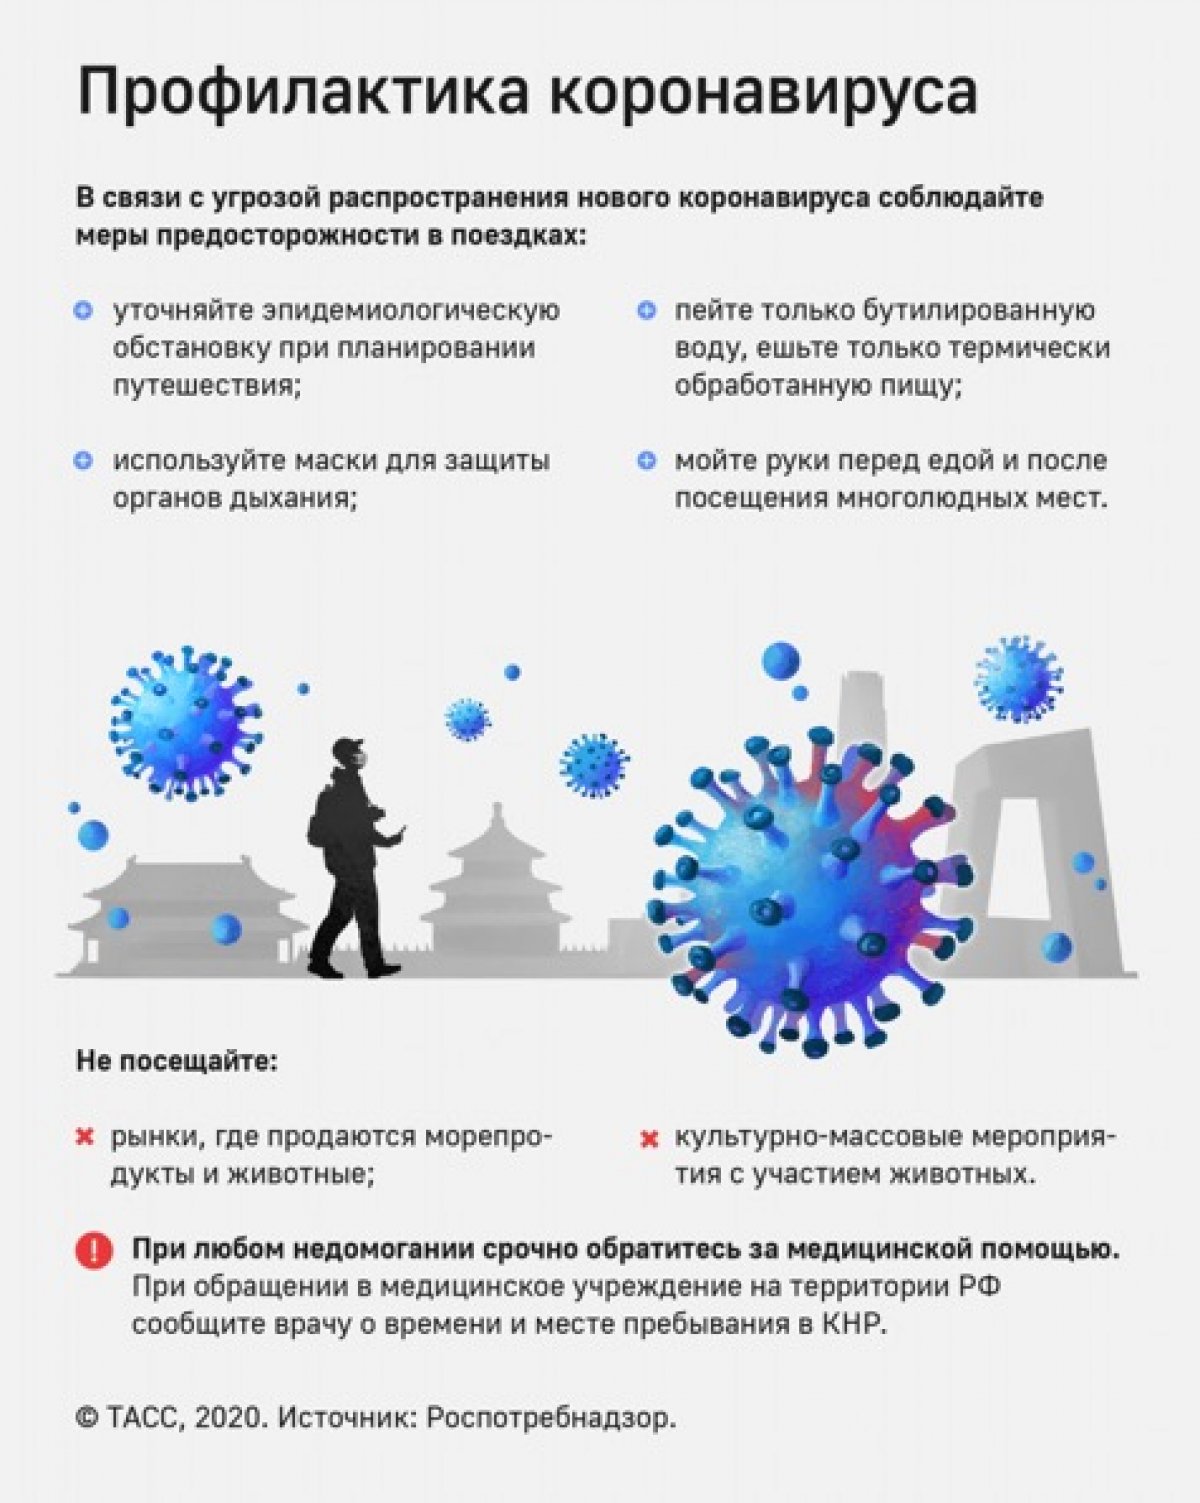 ❗❗❗Рекомендации Роспотребнадзора по профилактике коронавирусной инфекции